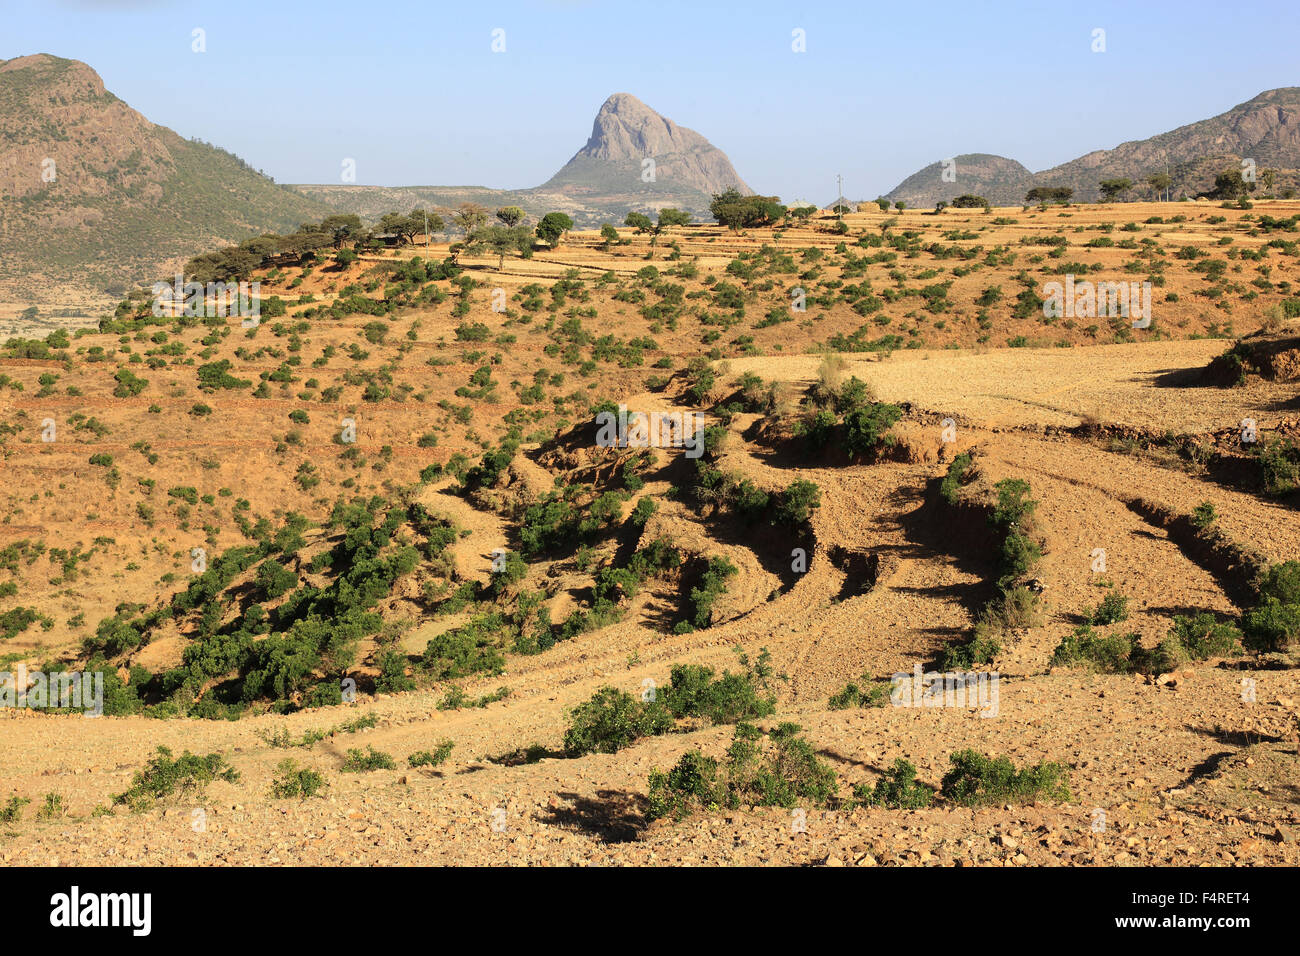 Paysage dans les montagnes Adua, montagnes Adwa, la bataille historique des Italiens en Ethiopie Banque D'Images